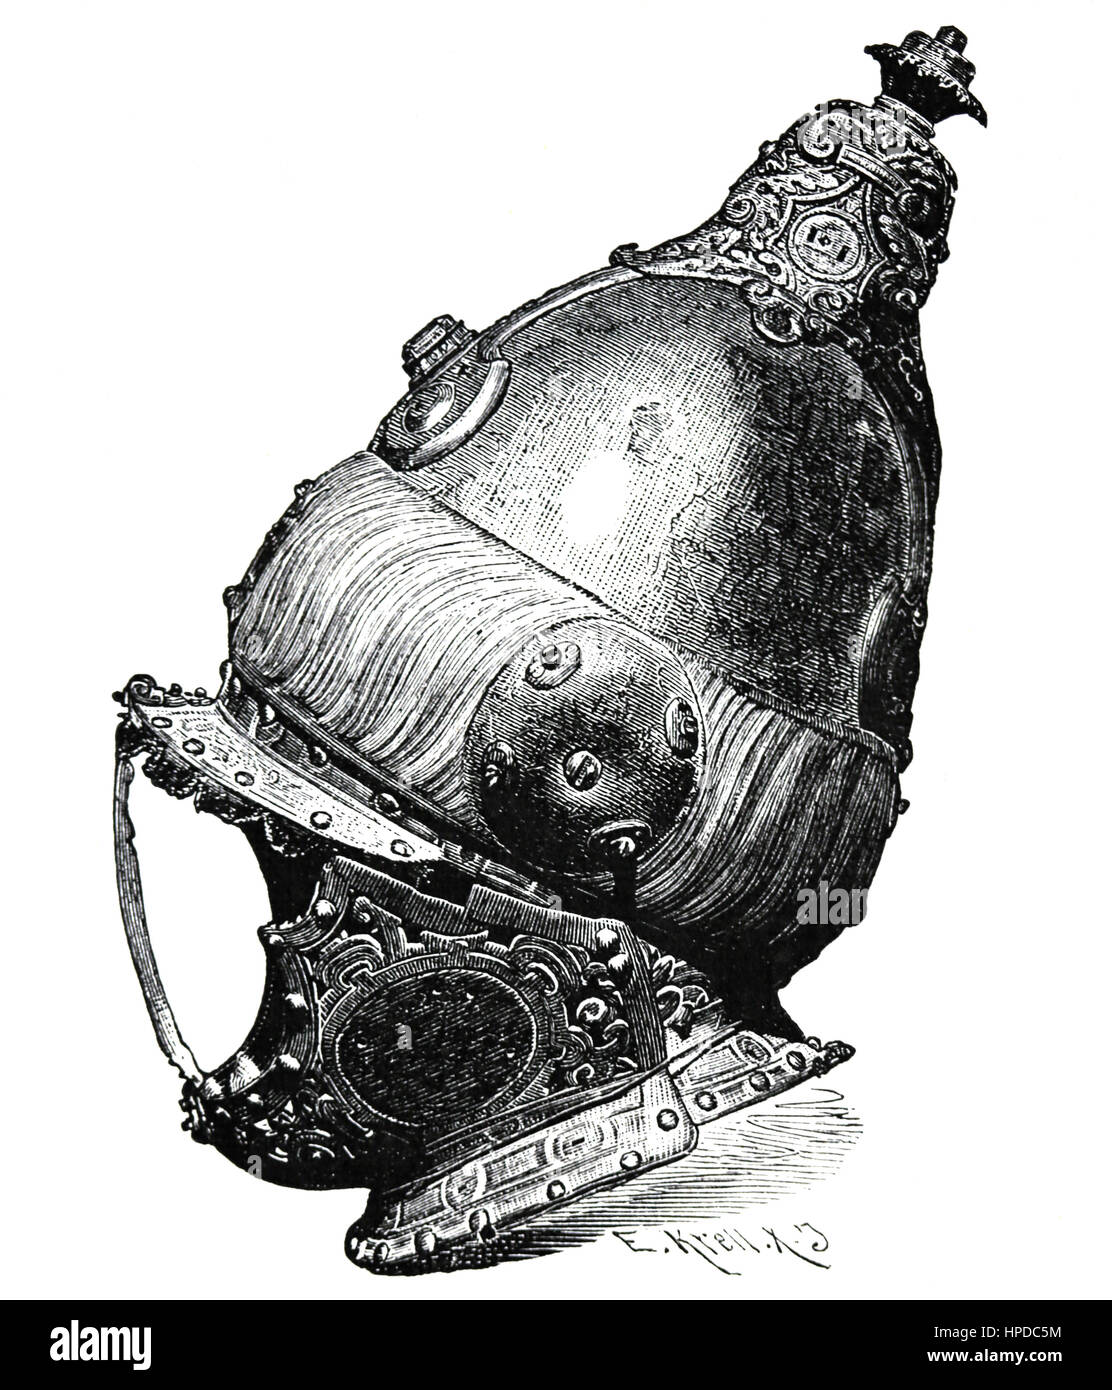 Armet, türkische Helm aus der Seeschlacht von Lepanto 1571. Gravur. Stockfoto